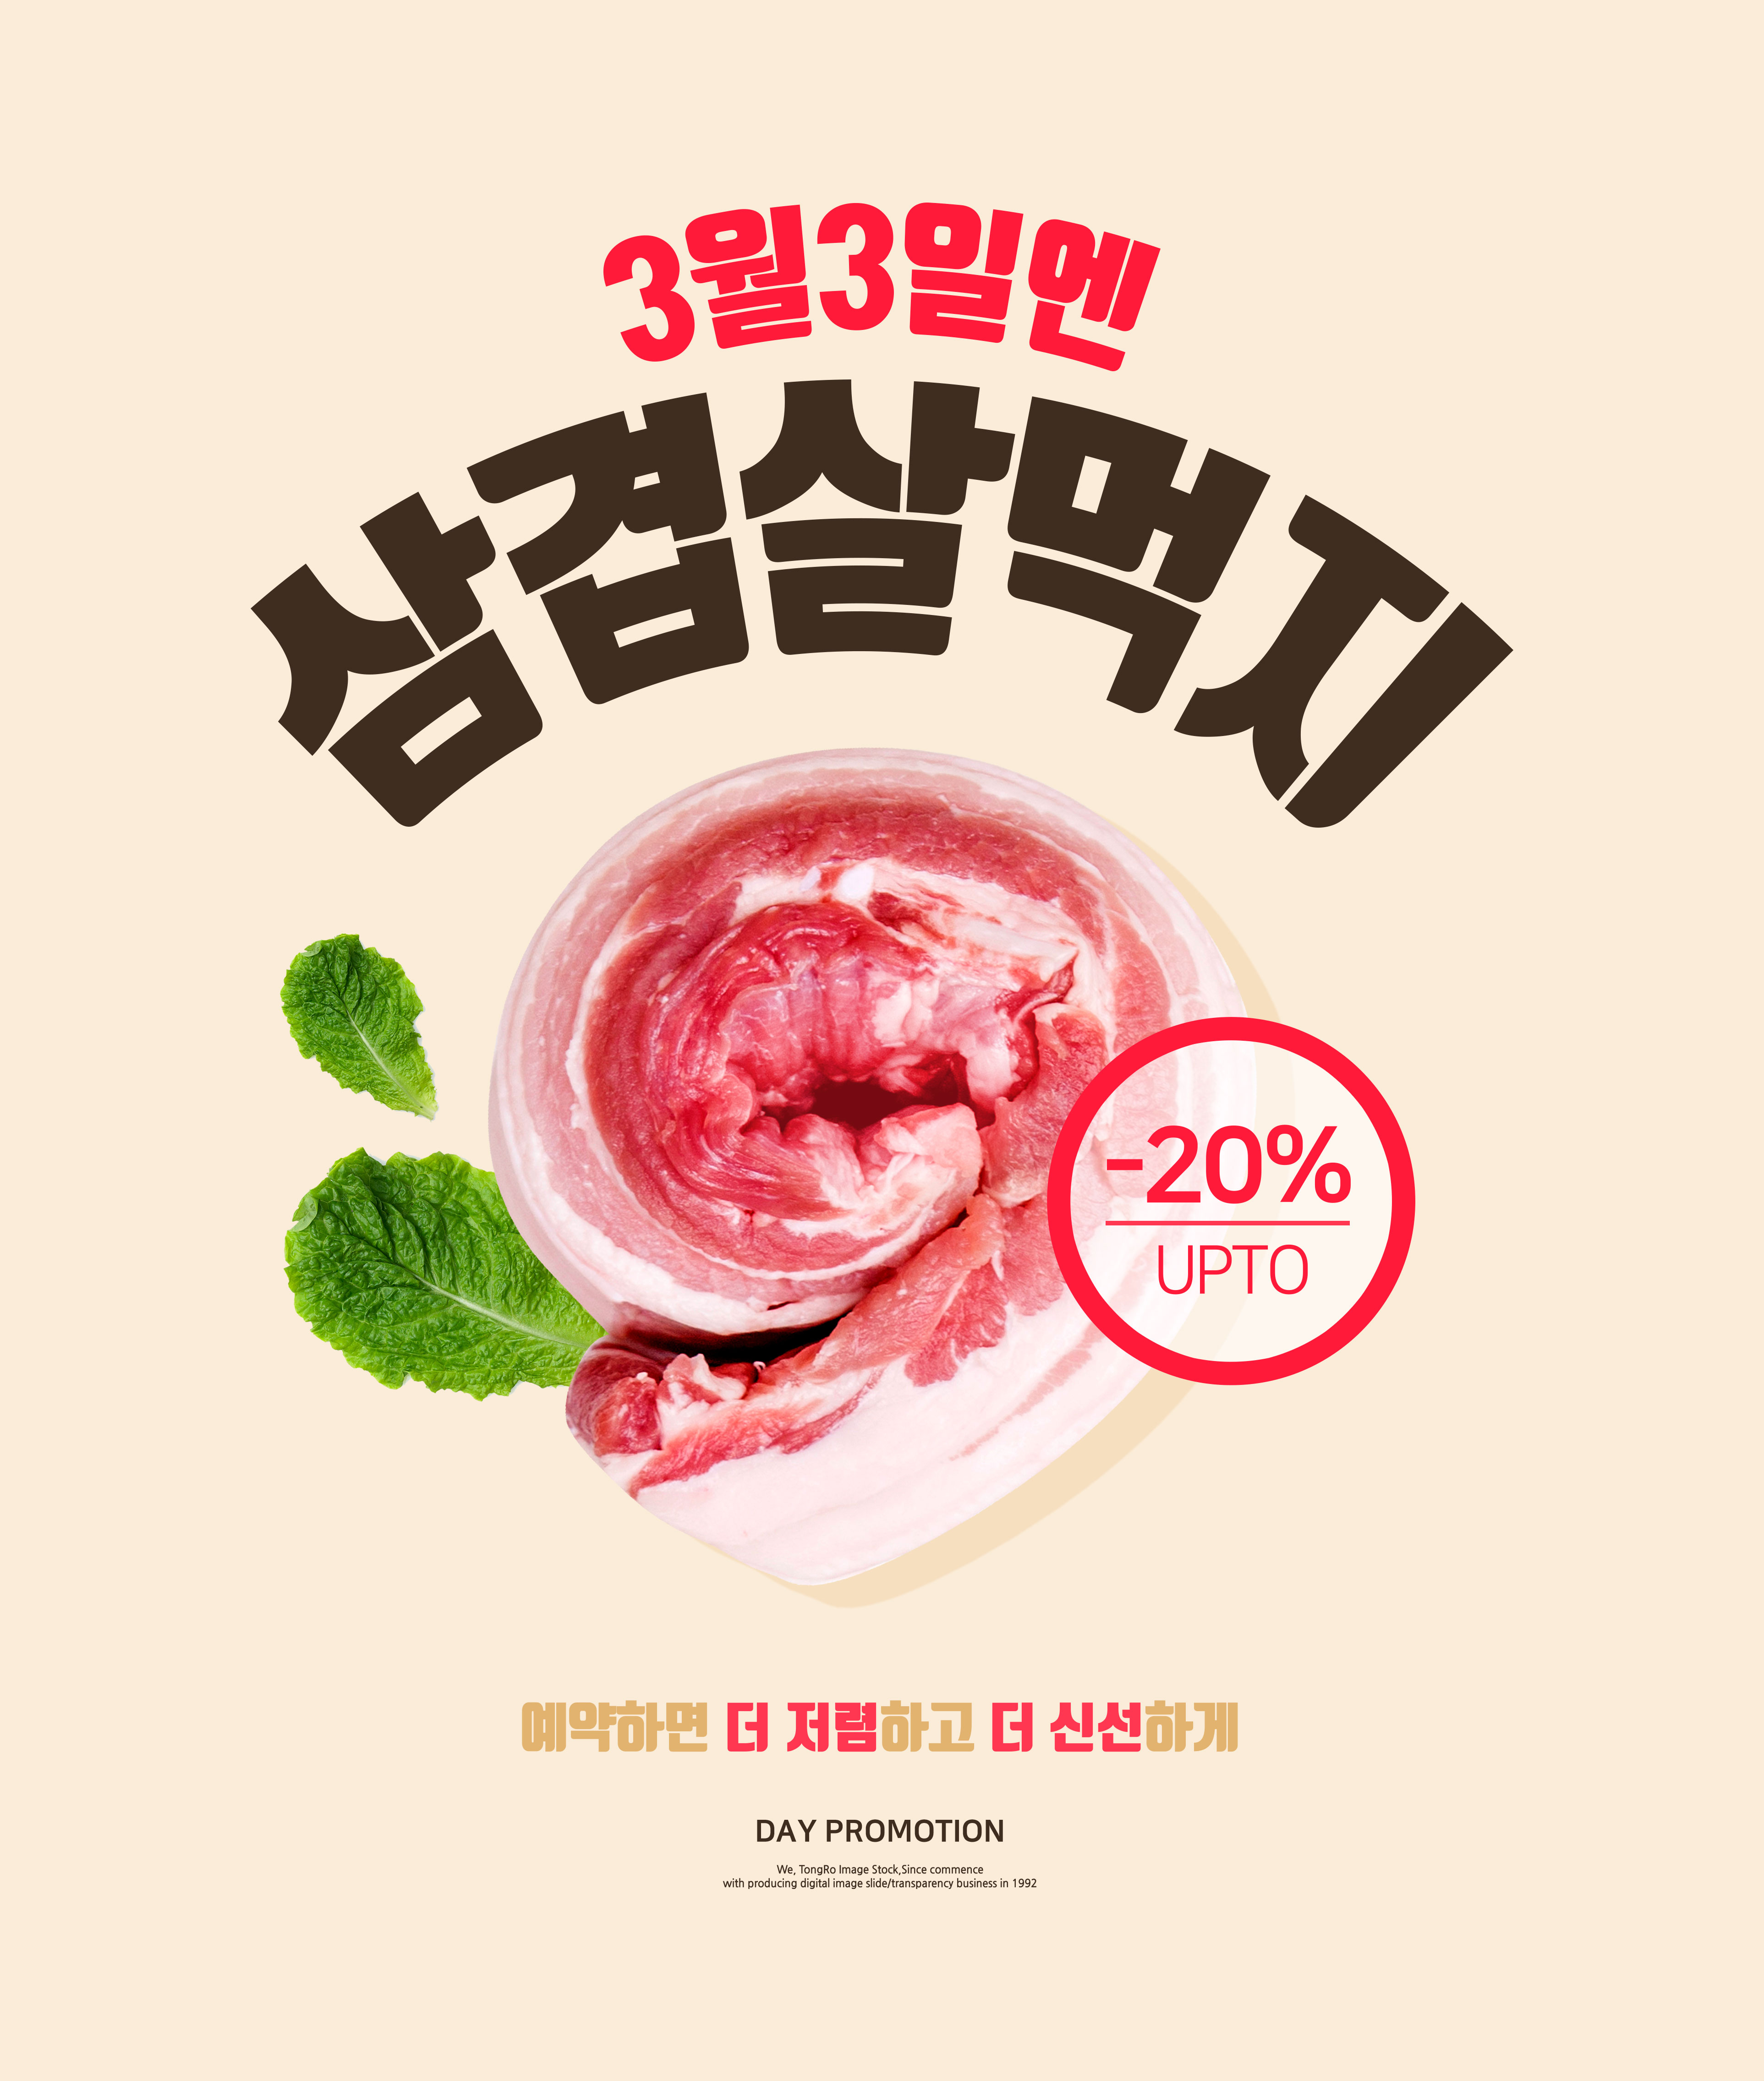 新鲜猪肉食品预订促销广告海报素材插图